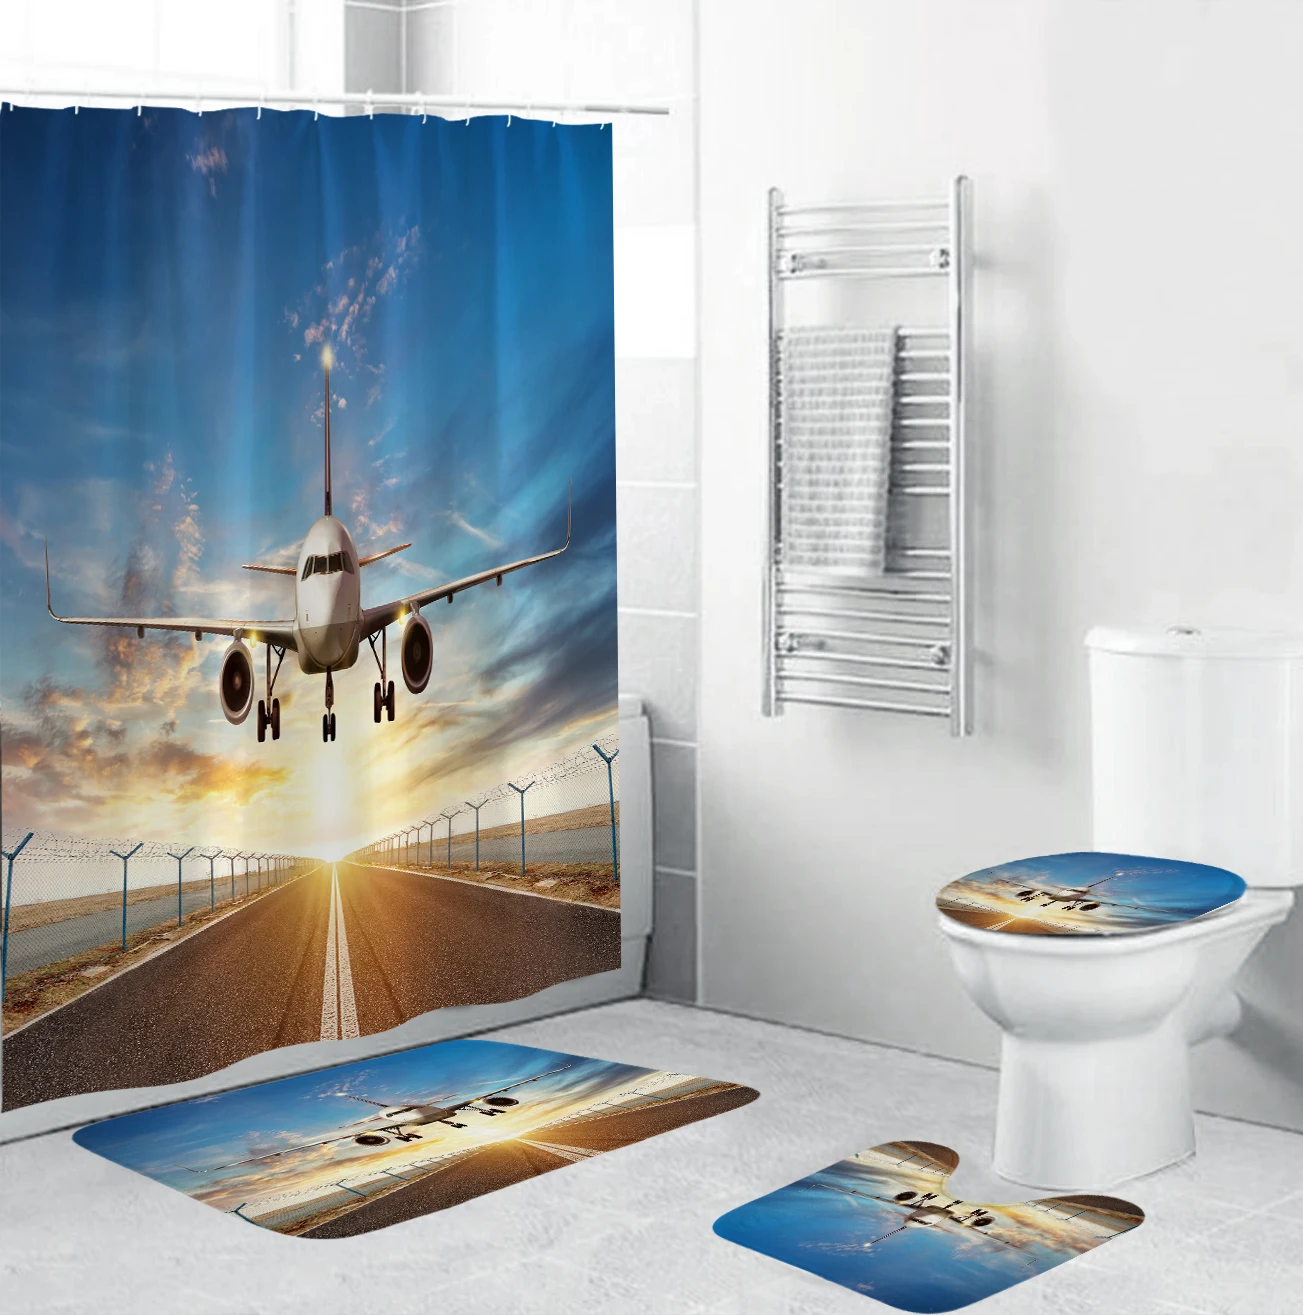 Şafak Mavi Gökyüzü Uçak Kalkış Baskılı Banyo Su Geçirmez Duş Perdesi Halı Kapak Halı Tuvalet yatak örtüsü seti banyo perdesi mat seti